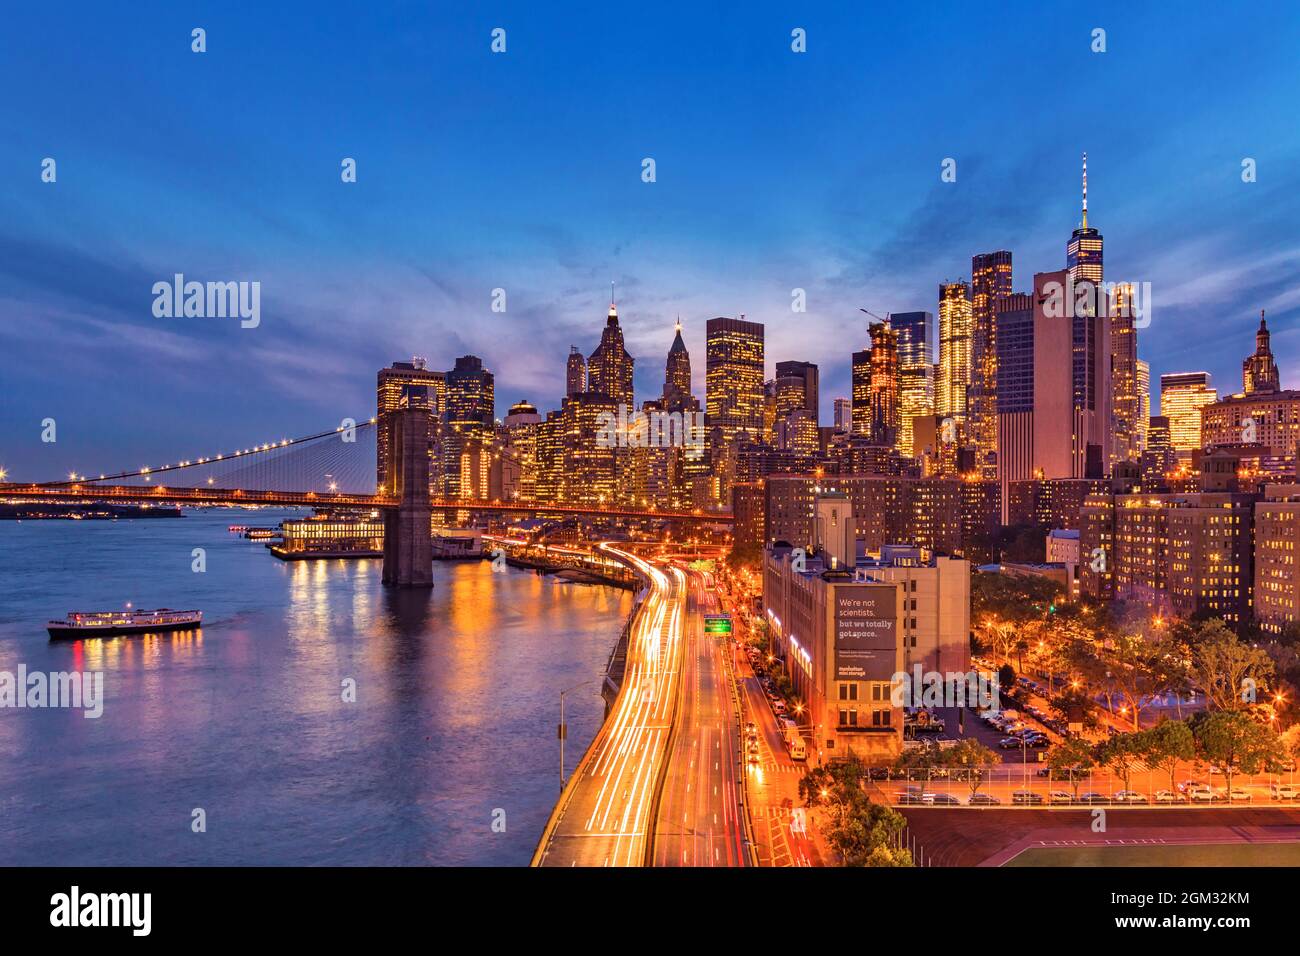 Puente de Brooklyn y Manhattan - vistas al Puente de Brooklyn, la autopista FDR y el distrito financiero durante la hora azul. Foto de stock